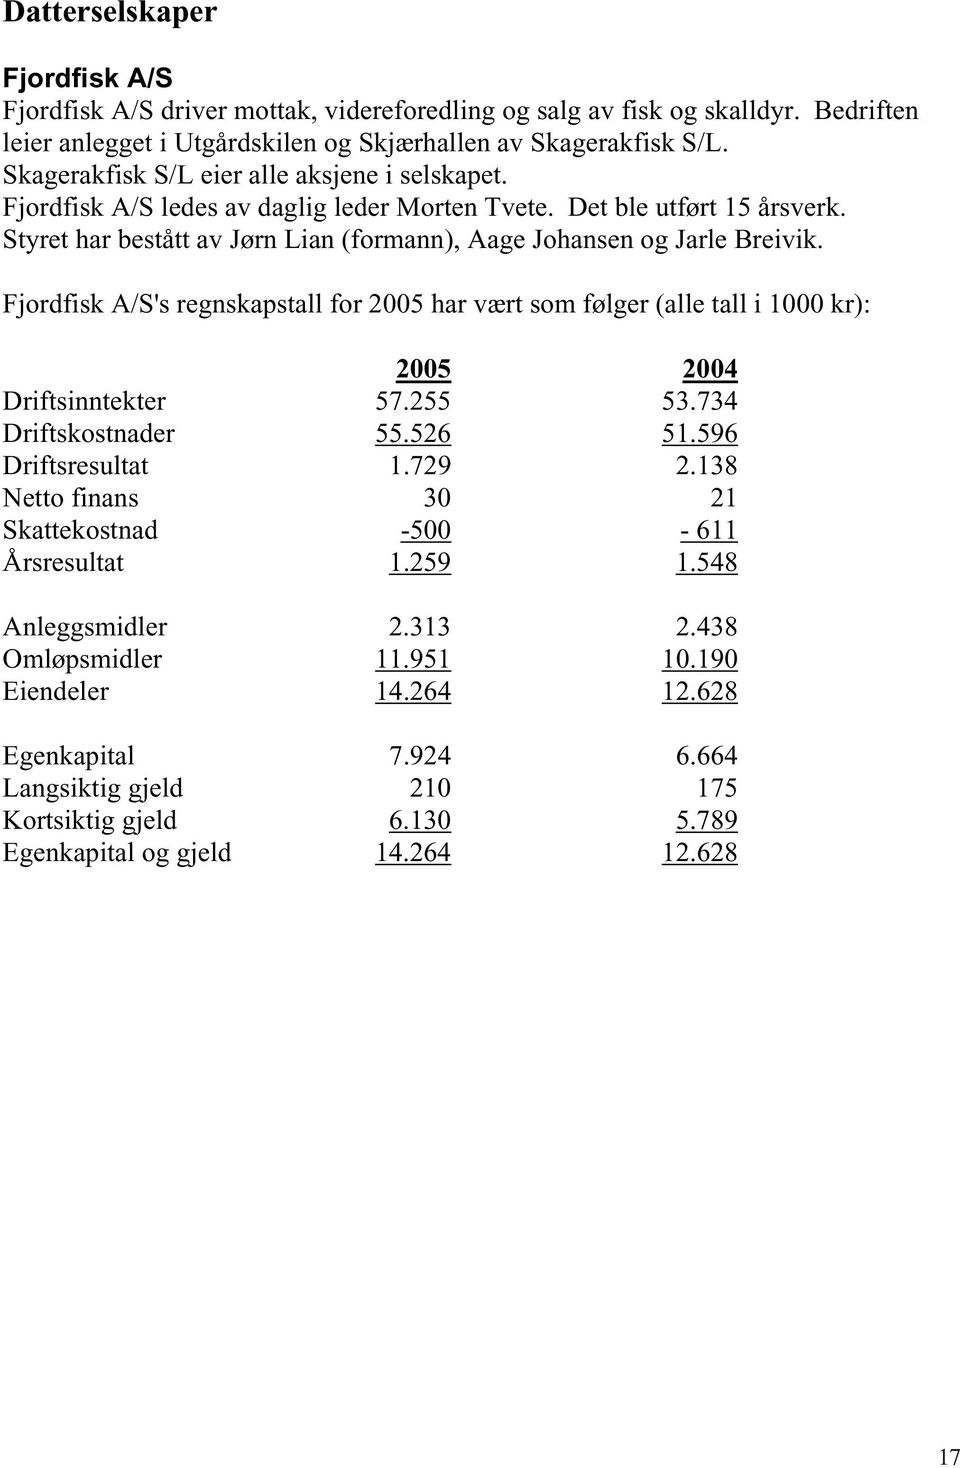 Fjordfisk A/S's regnskapstall for 2005 har vært som følger (alle tall i 1000 kr): 2005 2004 Driftsinntekter 57.255 53.734 Driftskostnader 55.526 51.596 Driftsresultat 1.729 2.